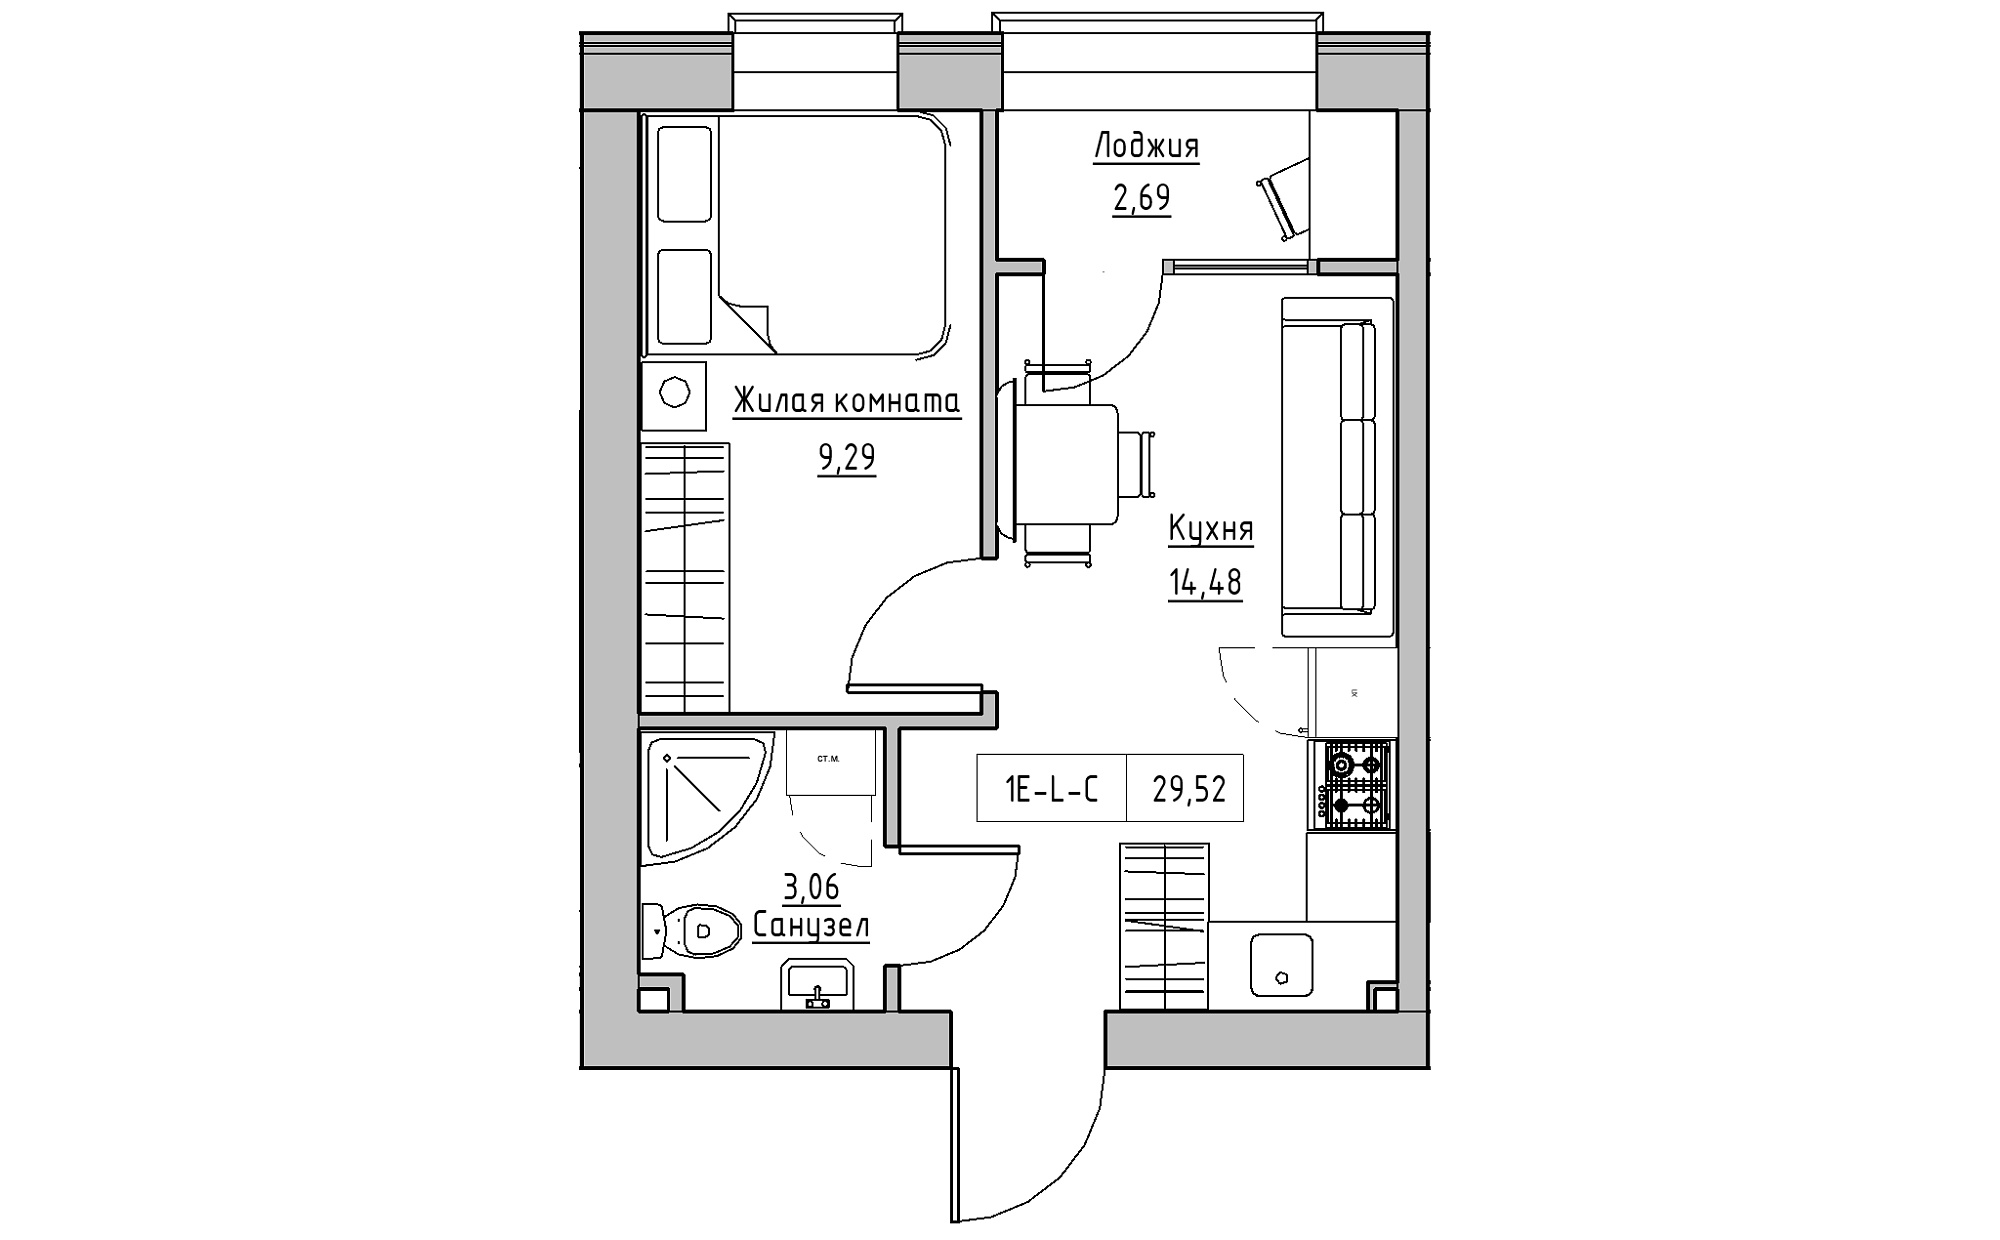 Планировка 1-к квартира площей 29.52м2, KS-022-04/0006.